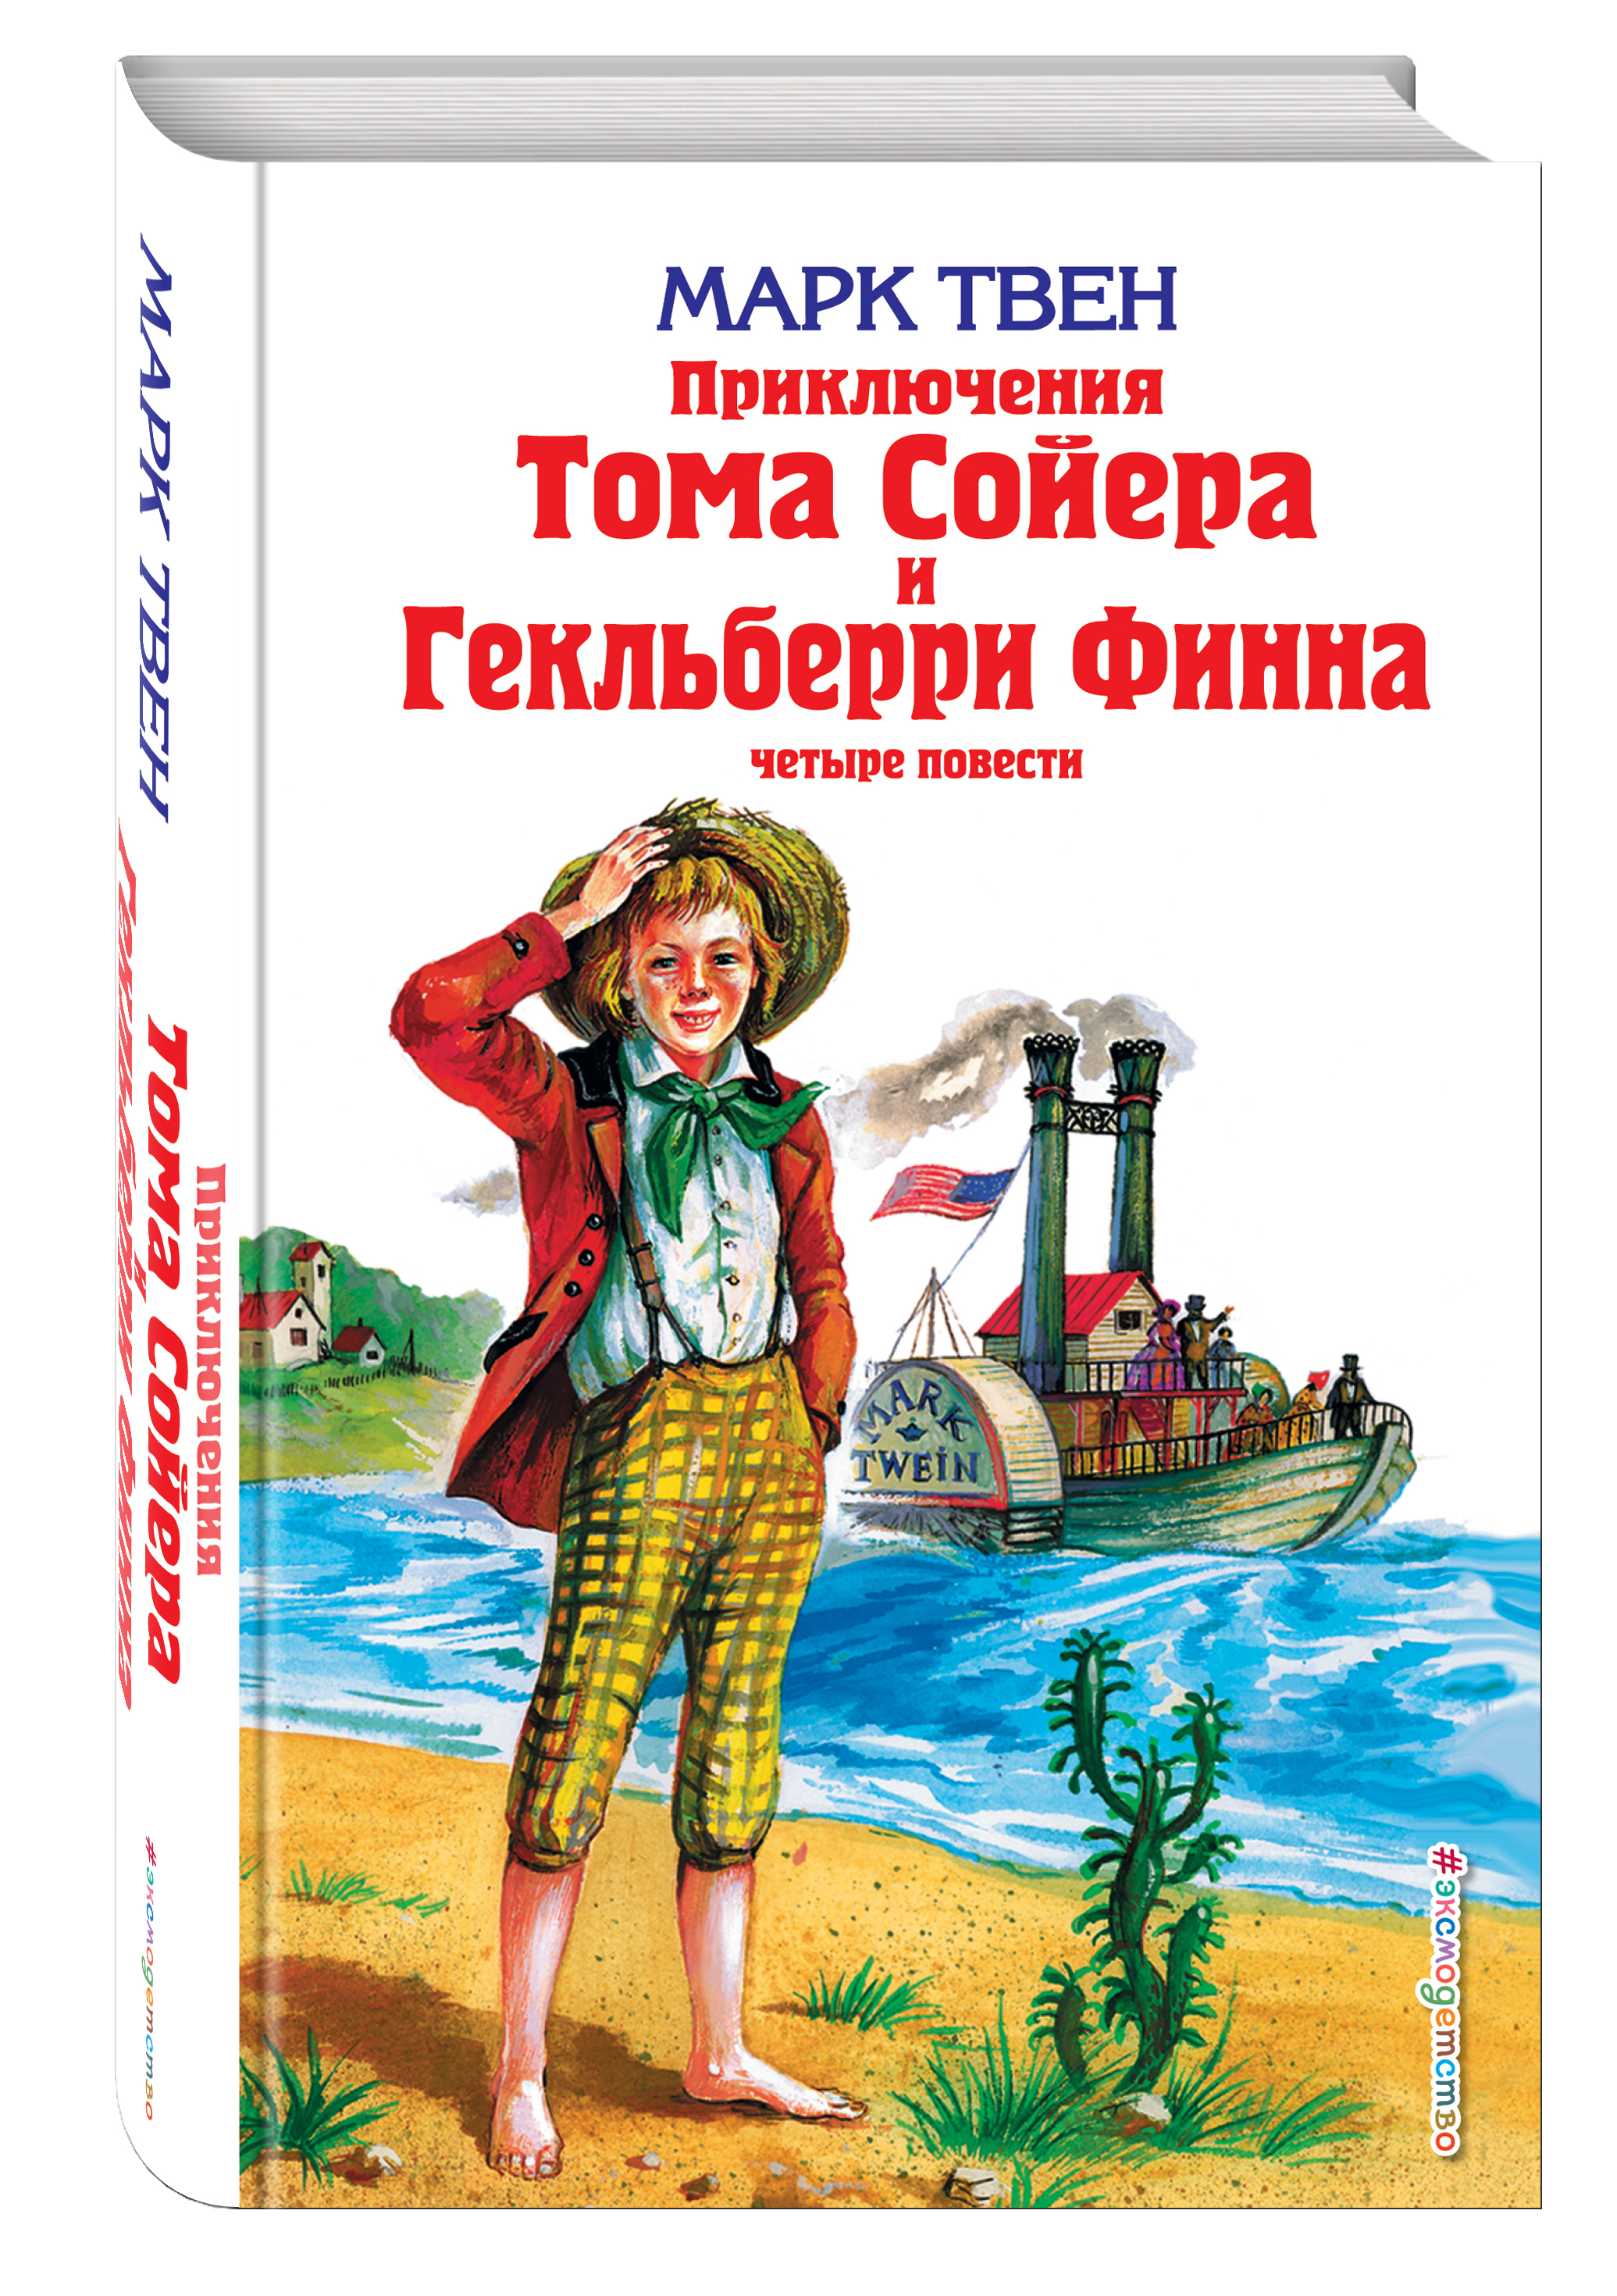 Книга марка Твена приключения Тома Сойера